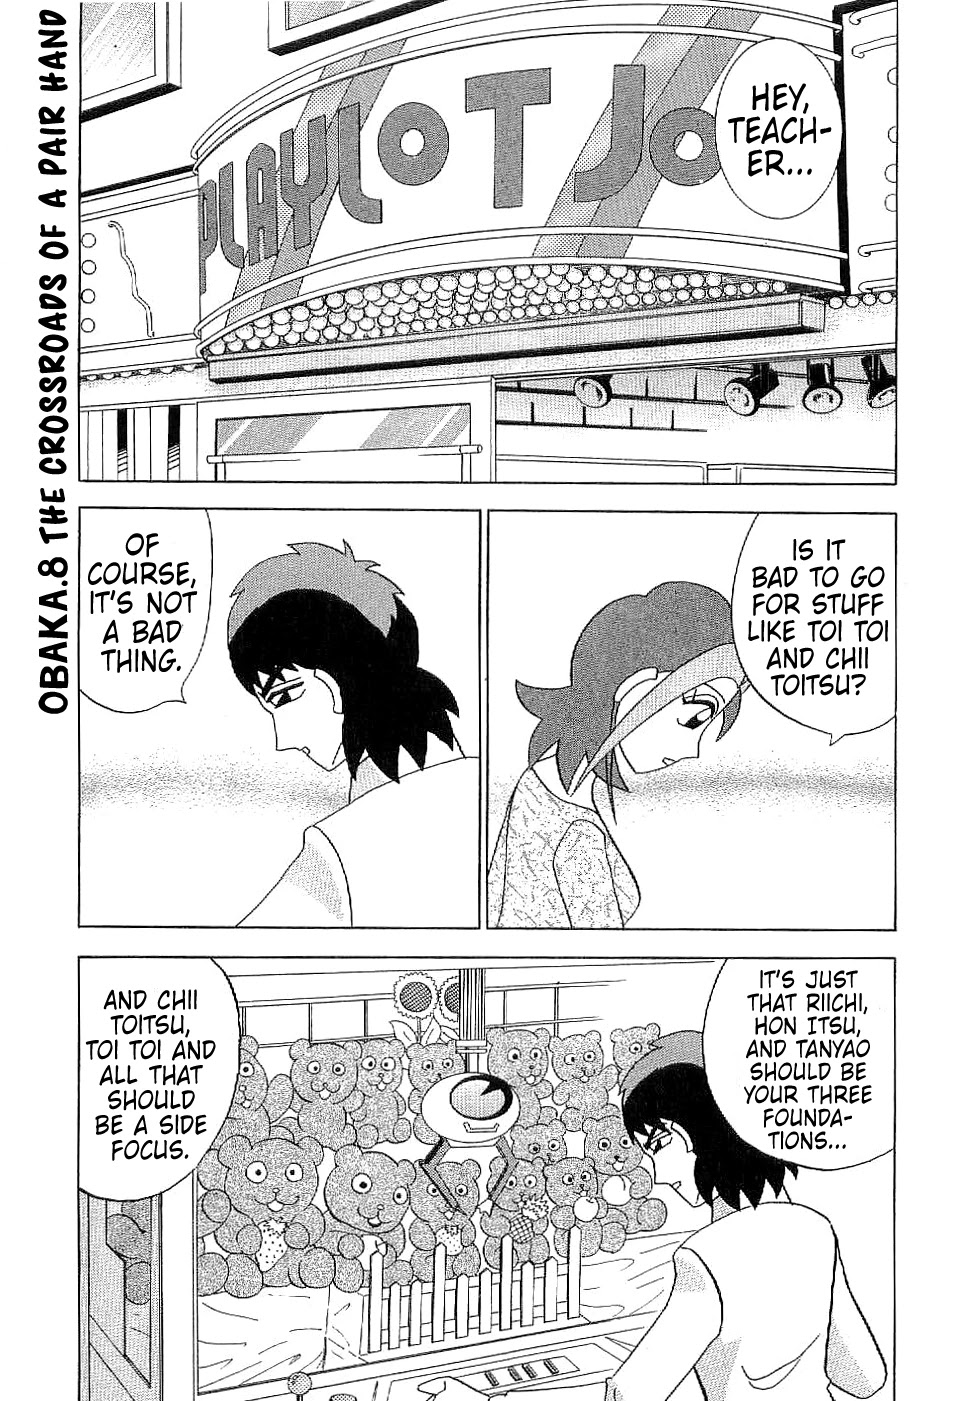 Mahjong Diva Obaka Miiko - Page 1